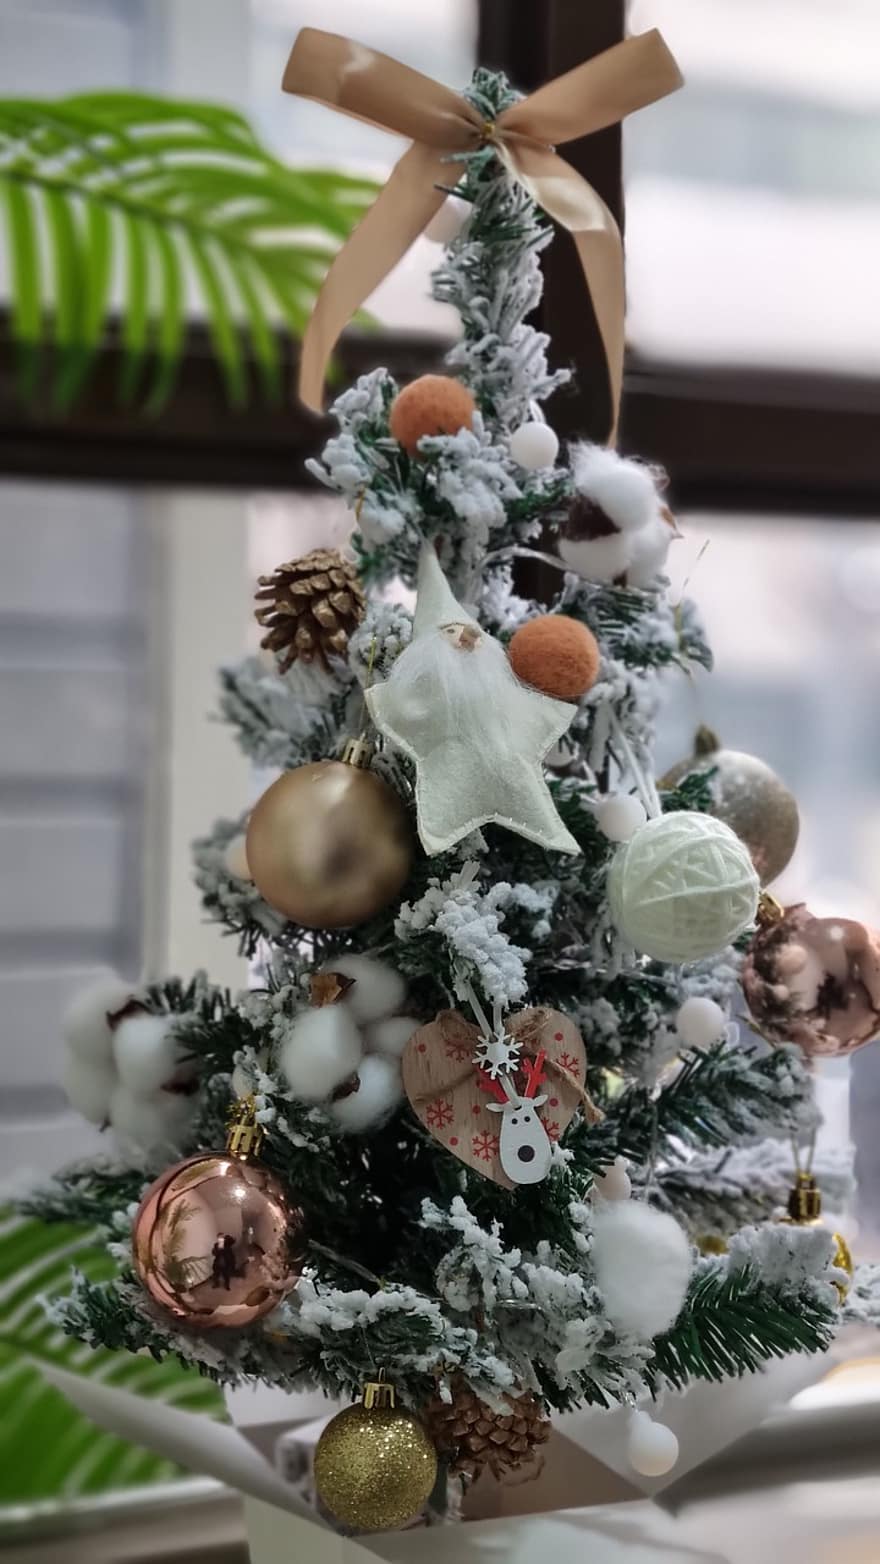 Noel, kış, kar, süs, dekorasyon, ağaç, kutlama, hediye, sezon, Noel süsü, Noel dekorasyonu